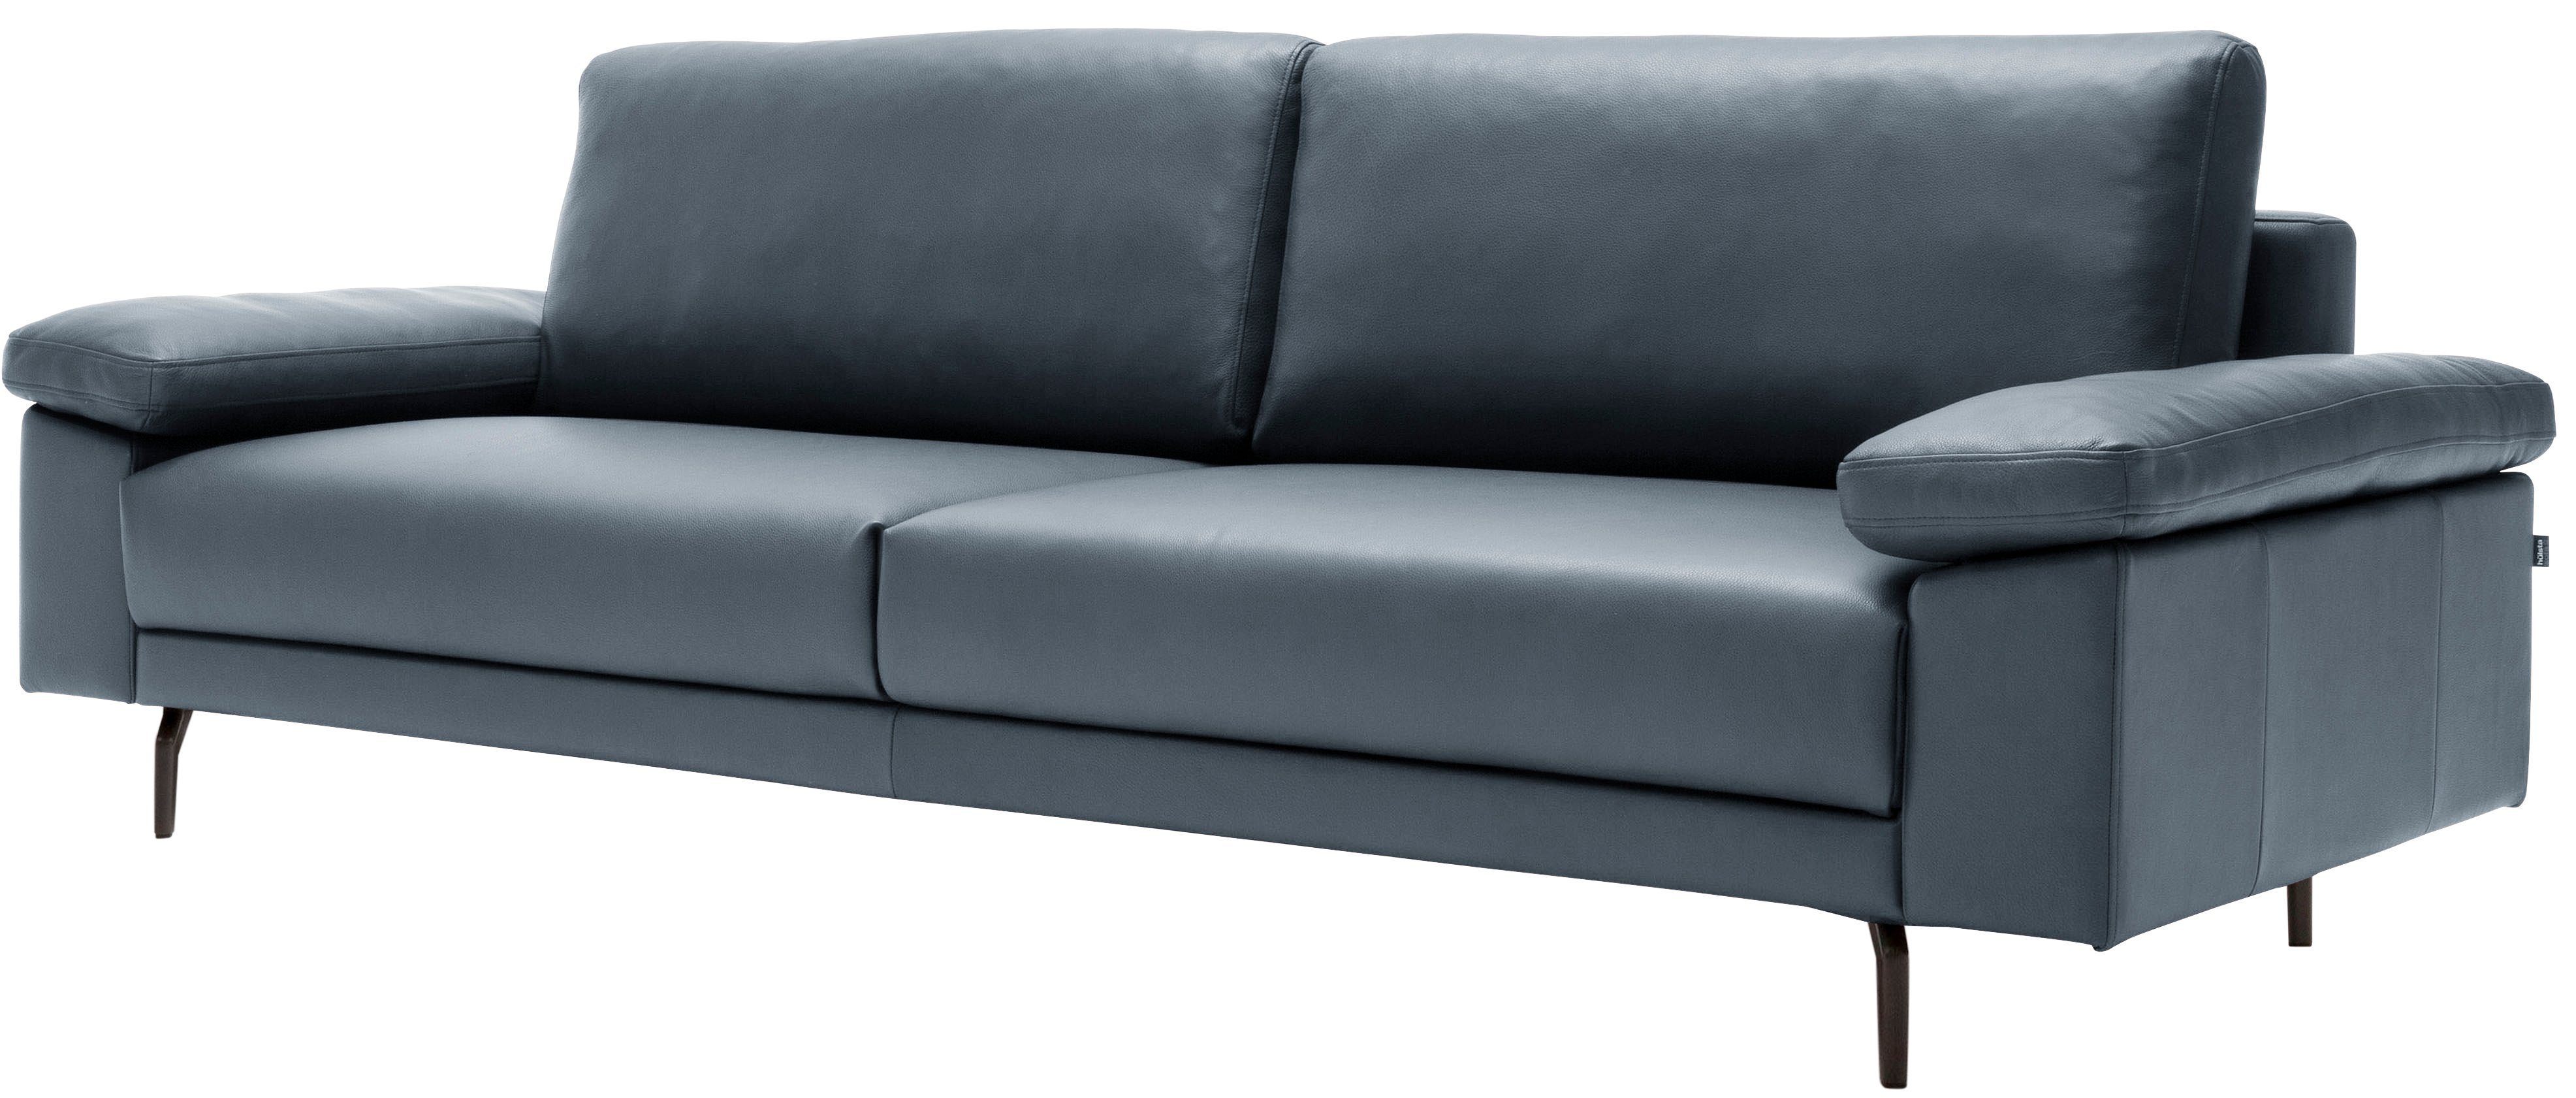 2,5-Sitzer hs.450 hülsta sofa